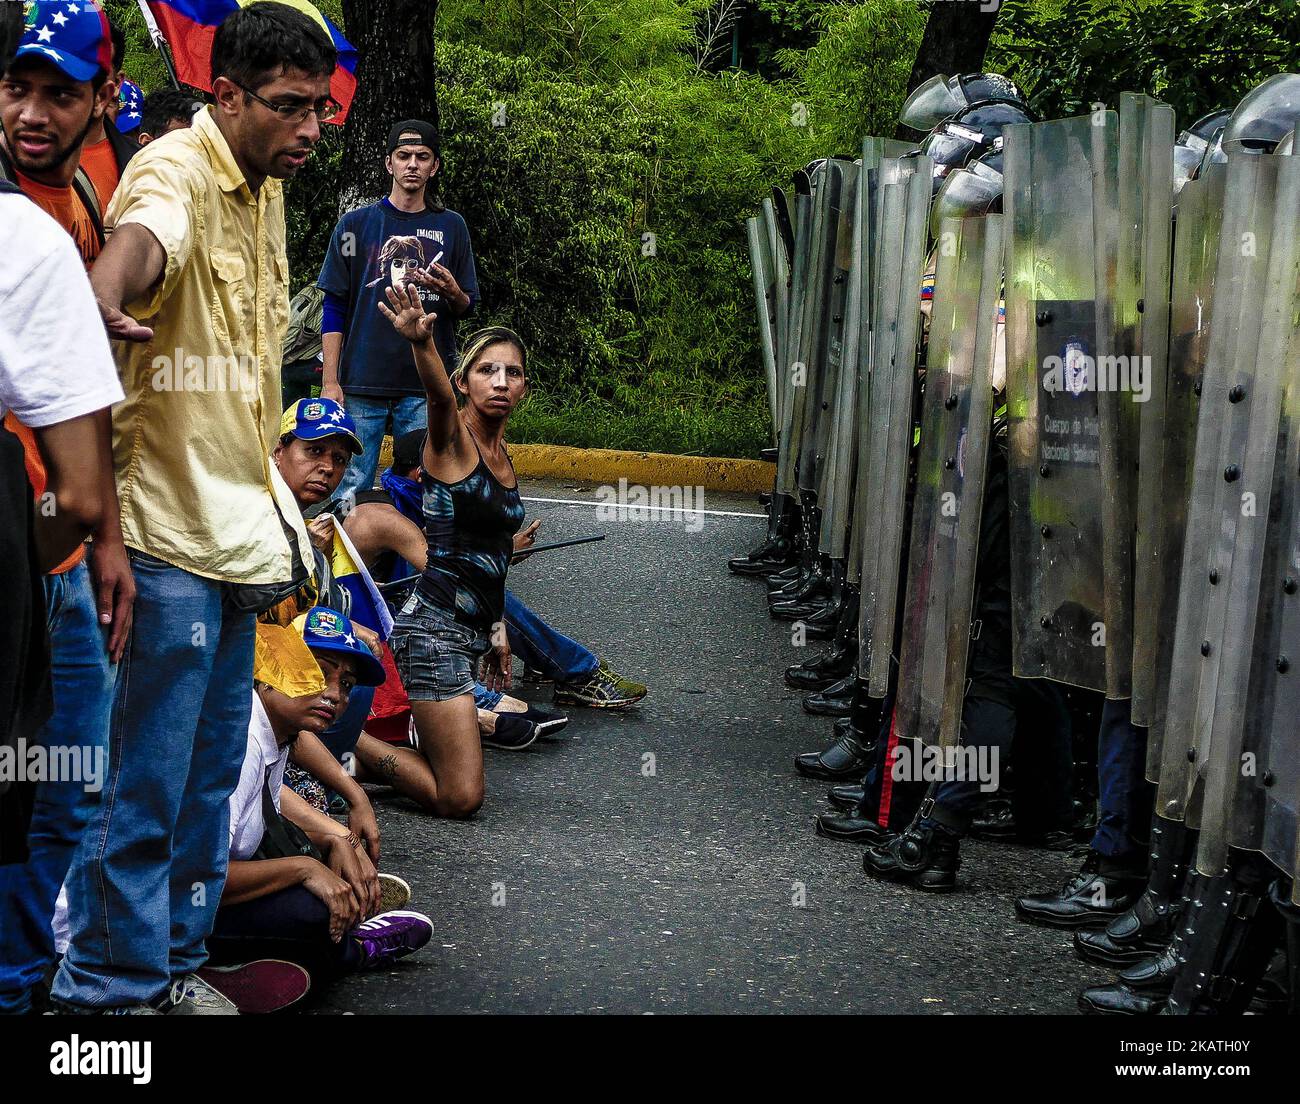 Des manifestants sont descendus dans les rues de Caracas pendant plusieurs mois pour protester contre le gouvernement du président Nicolas Maduro. Selon des organisations à but non lucratif, 129 personnes ont perdu la vie lors des manifestations de 2017. (Photo par Roman Camacho/NurPhoto) Banque D'Images